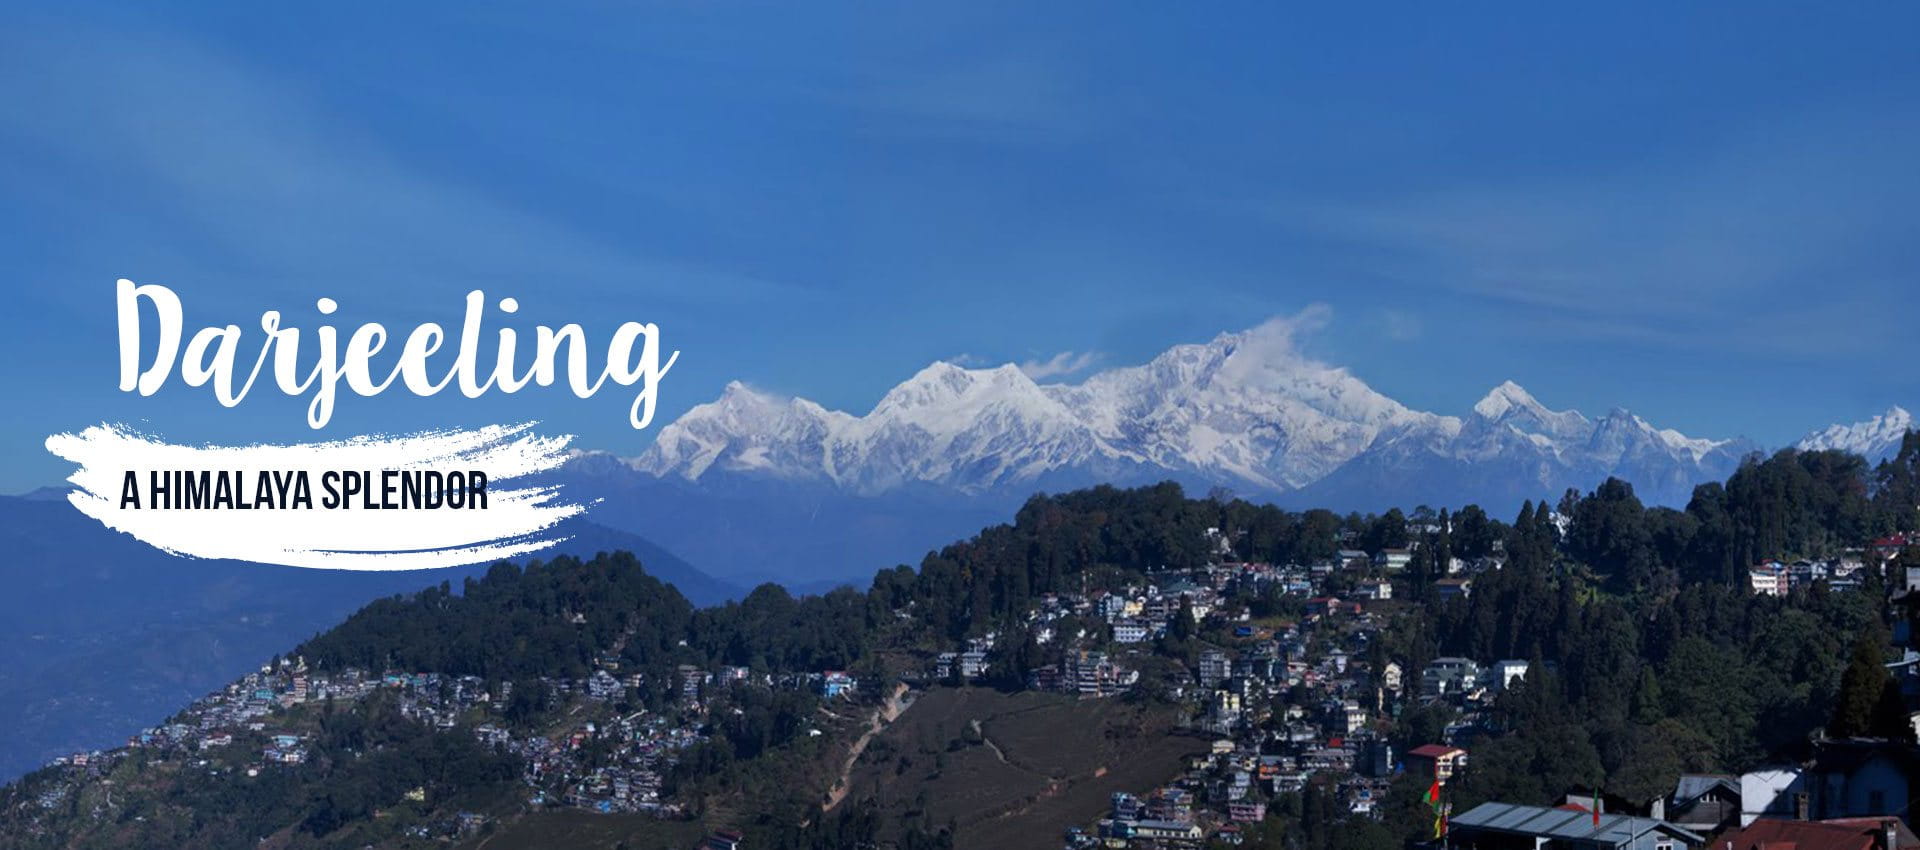 Darjeeling tours - Av tours